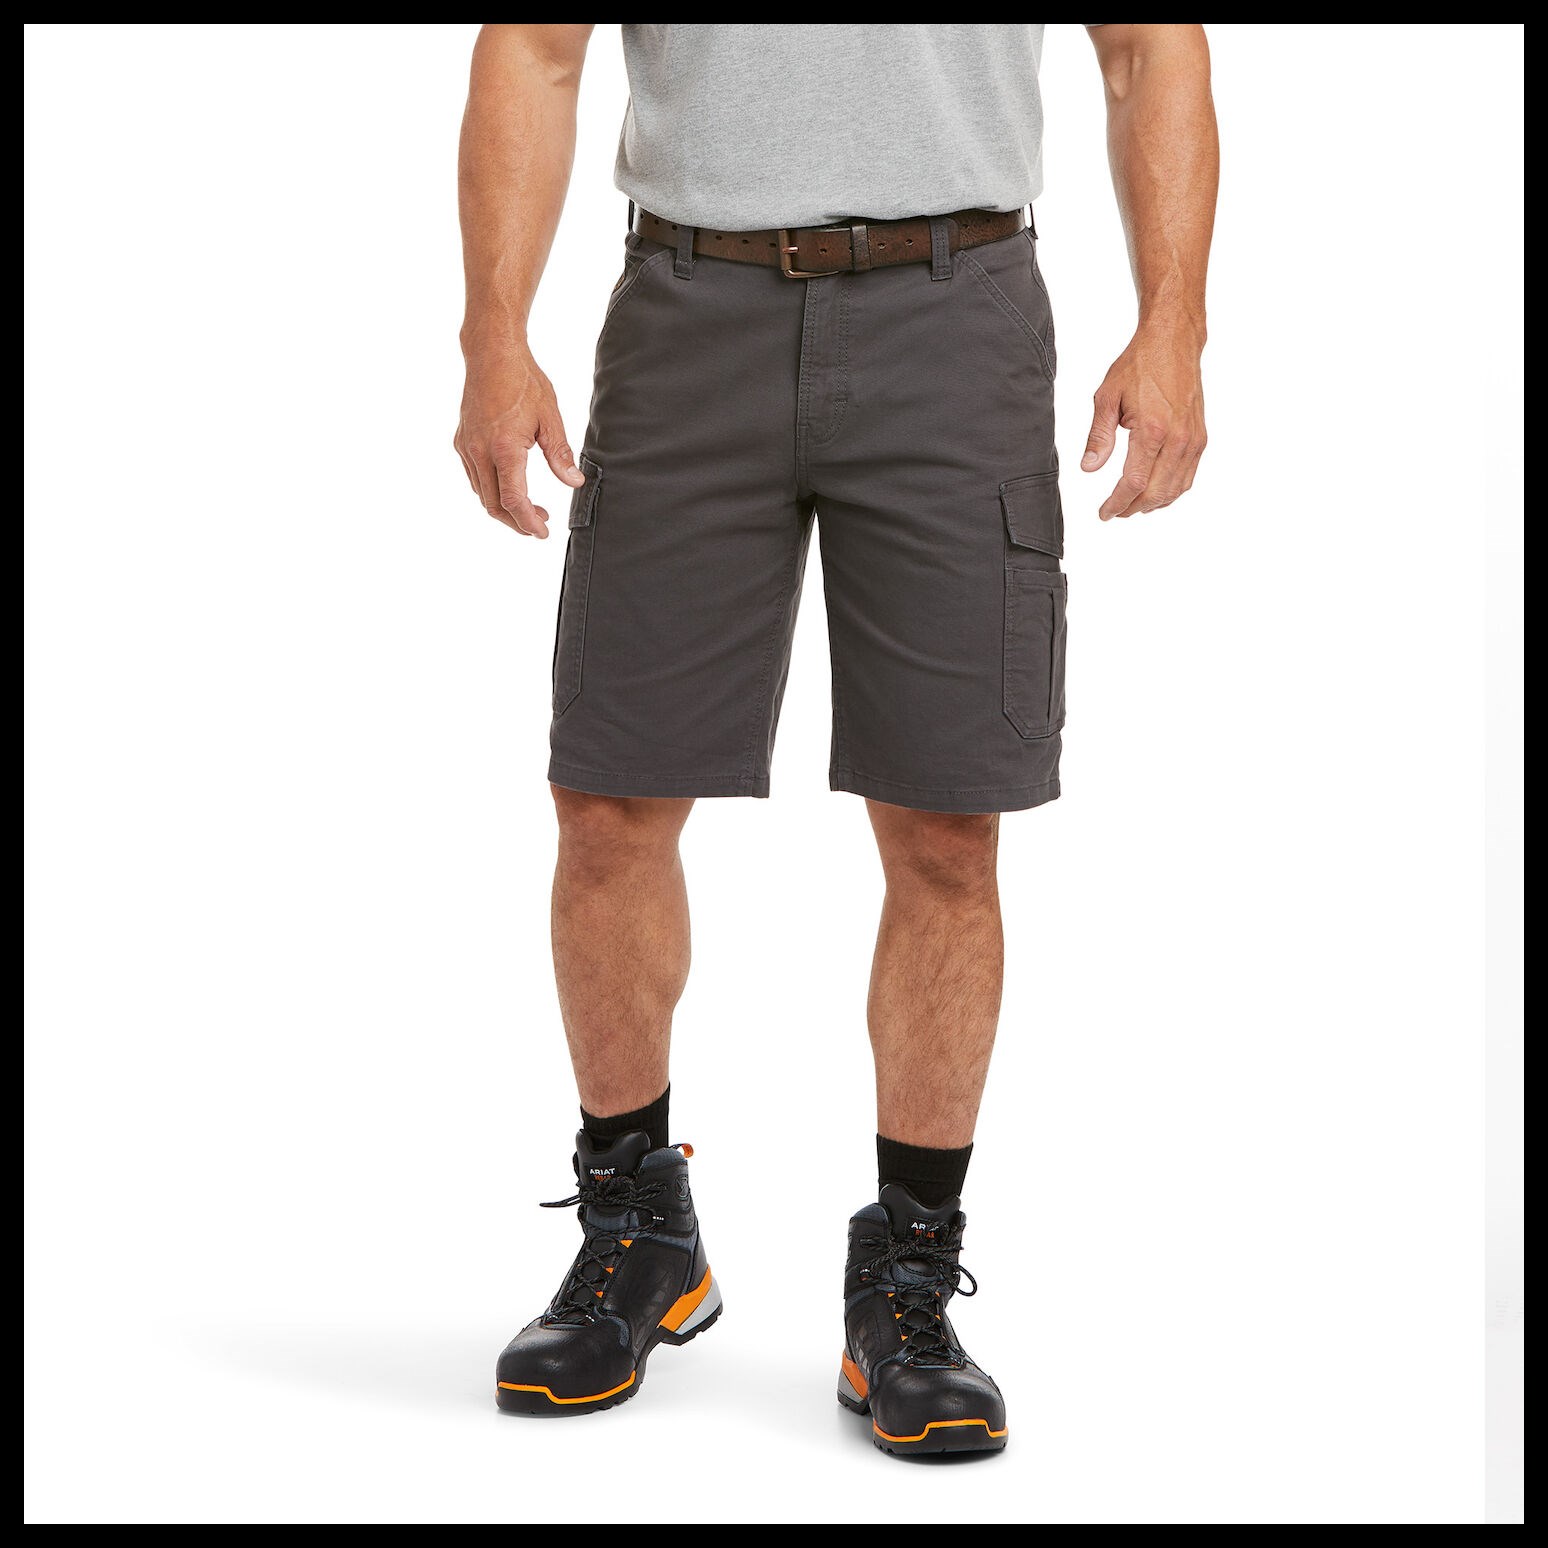 Ariat Men's Rebar DuraStretch Made Tough Cargo Short in Rebar Grey -  Jeans/Pants & Shorts, Ariat